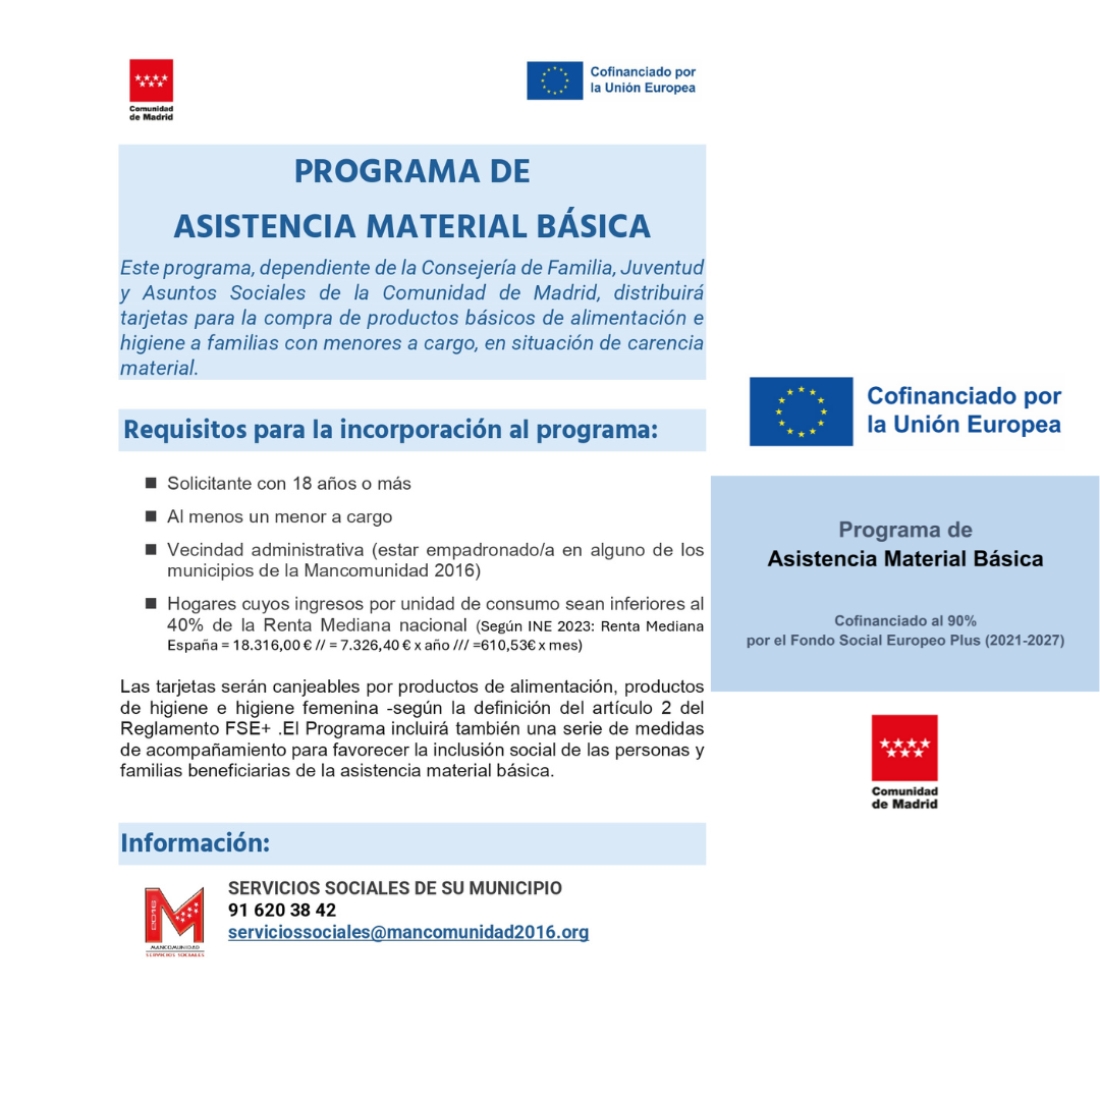 PROGRAMA DE ASISTENCIA MATERIAL BÁSICA